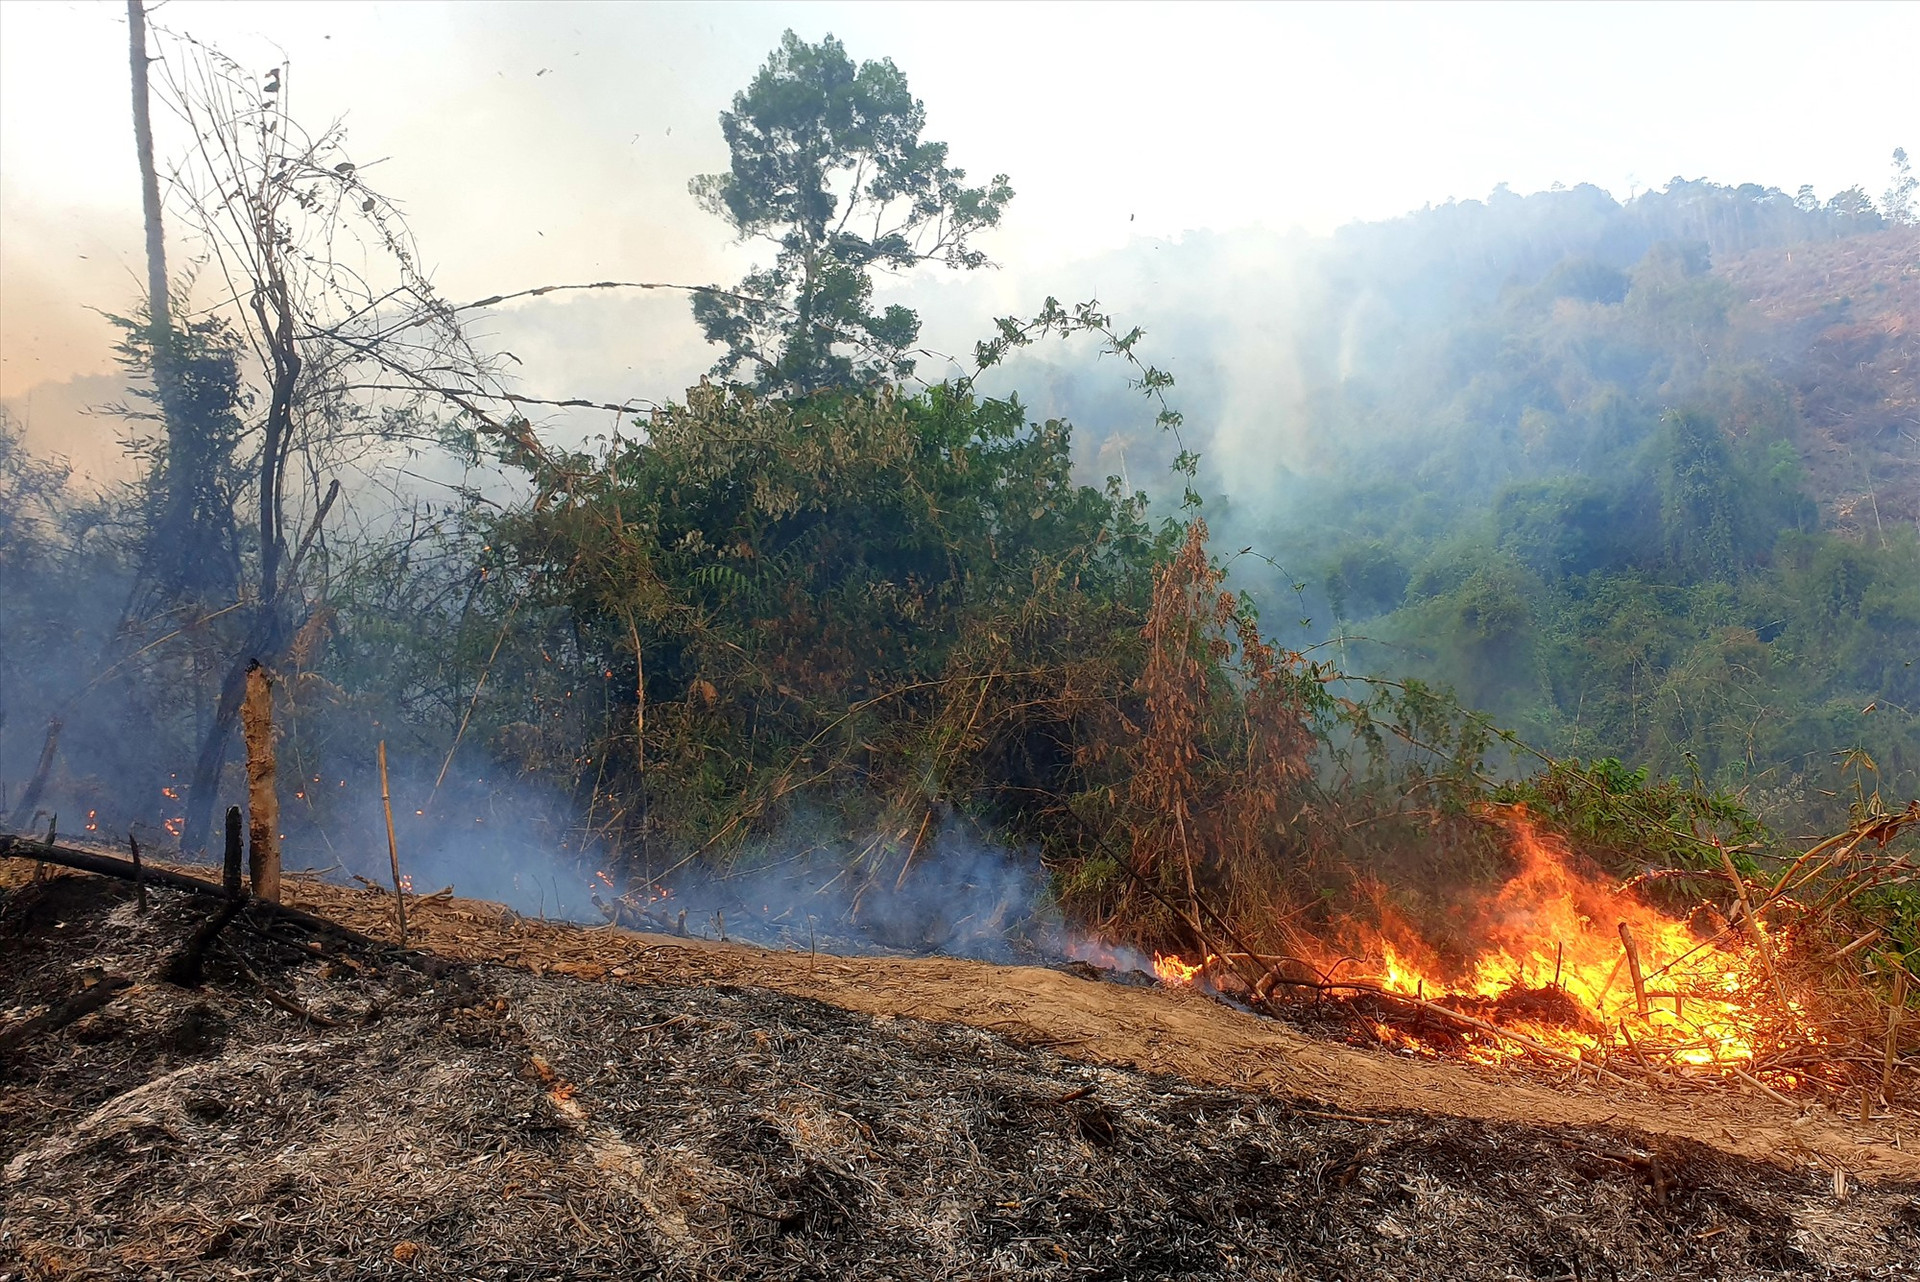 Đám cháy lan rộng tại khu vực Rừng phòng hộ Đông Giang. Ảnh: Đ.N